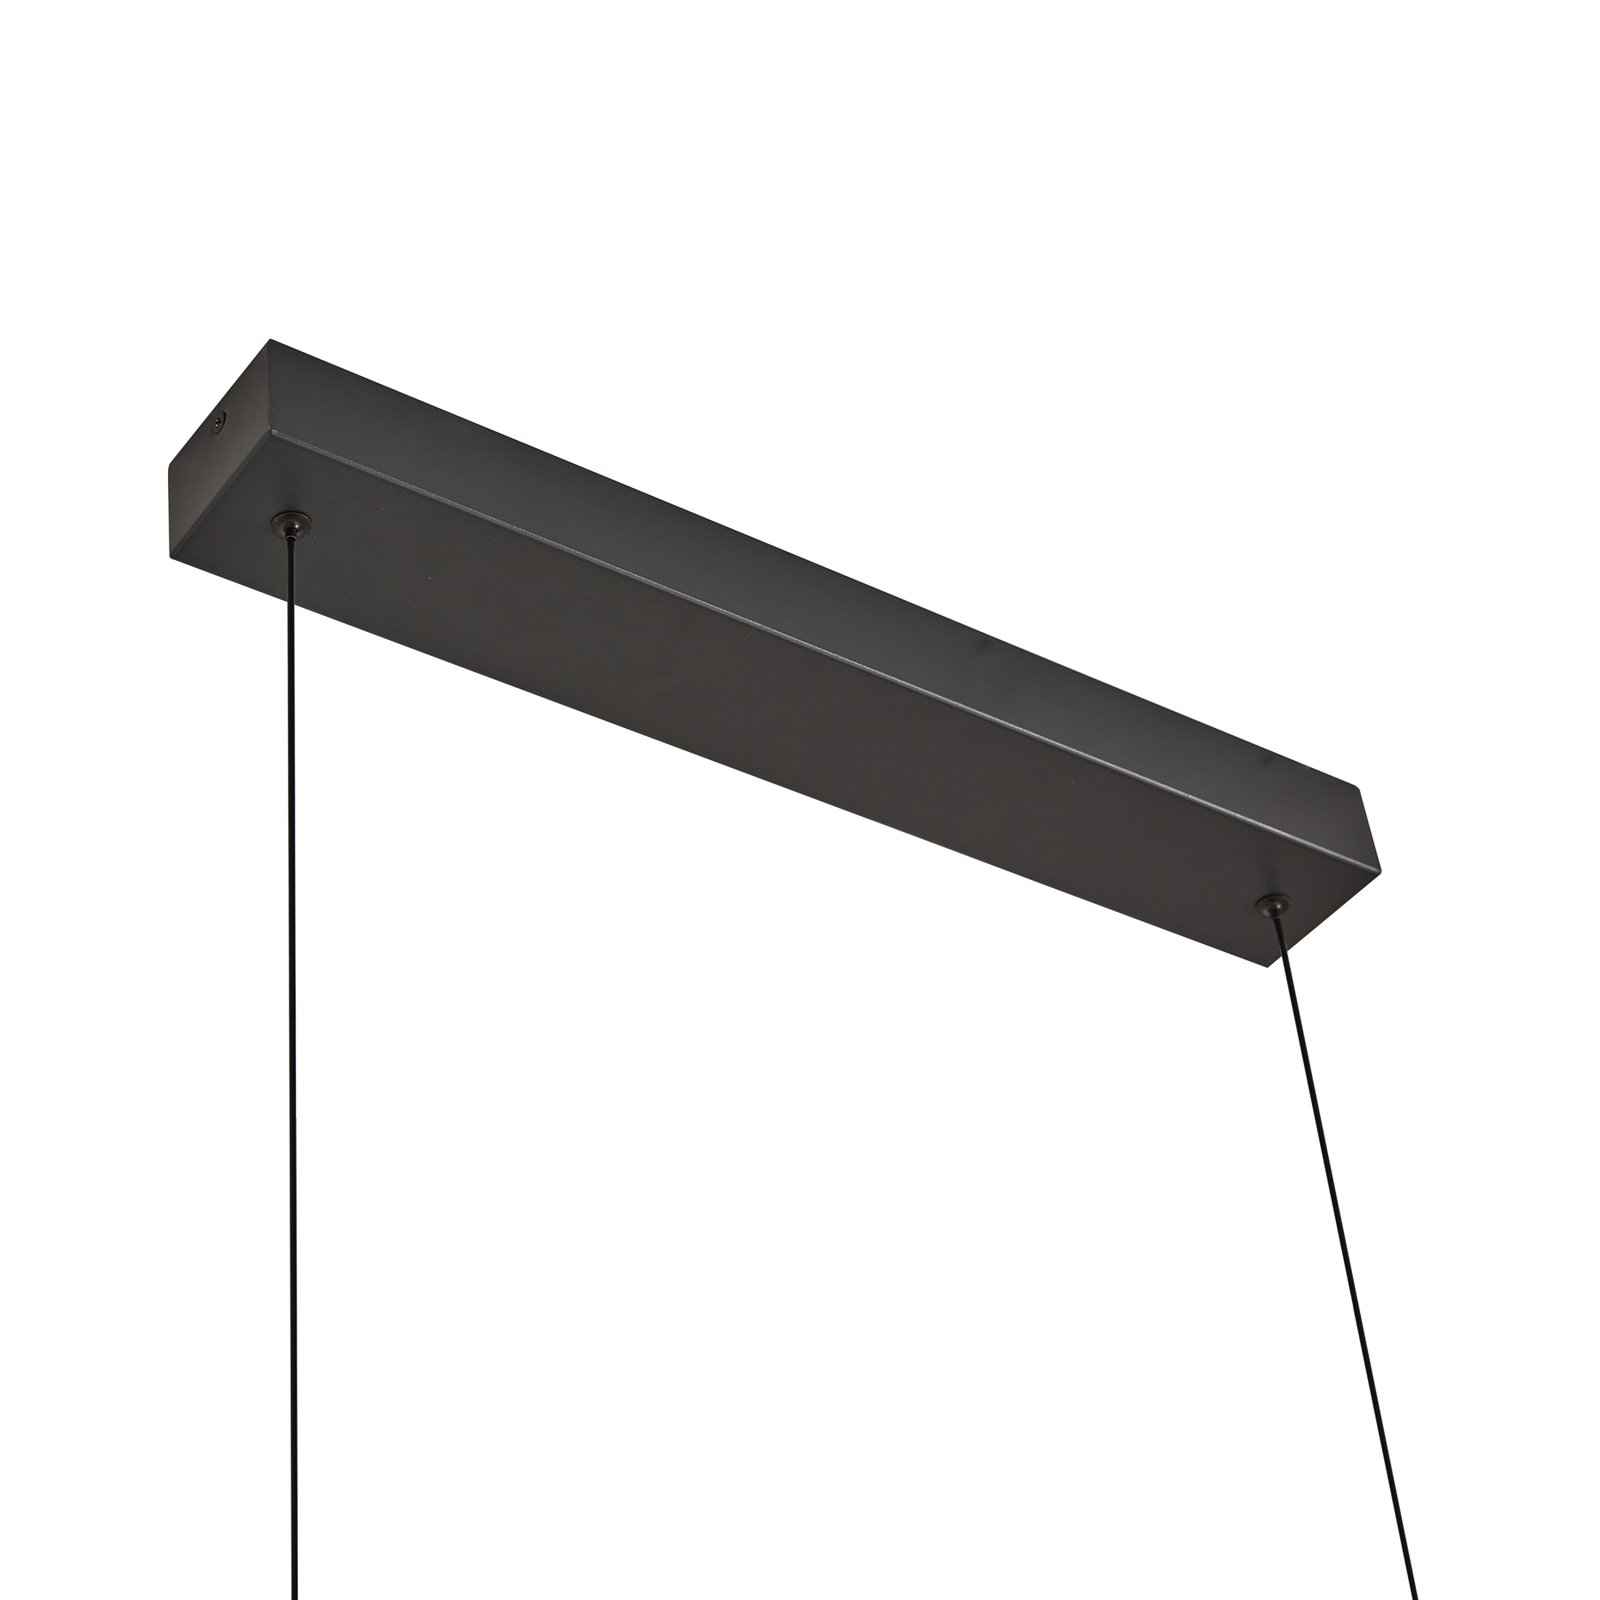 Lampa wisząca Lucande LED Madu, czarna, metal, 92,5 cm długości